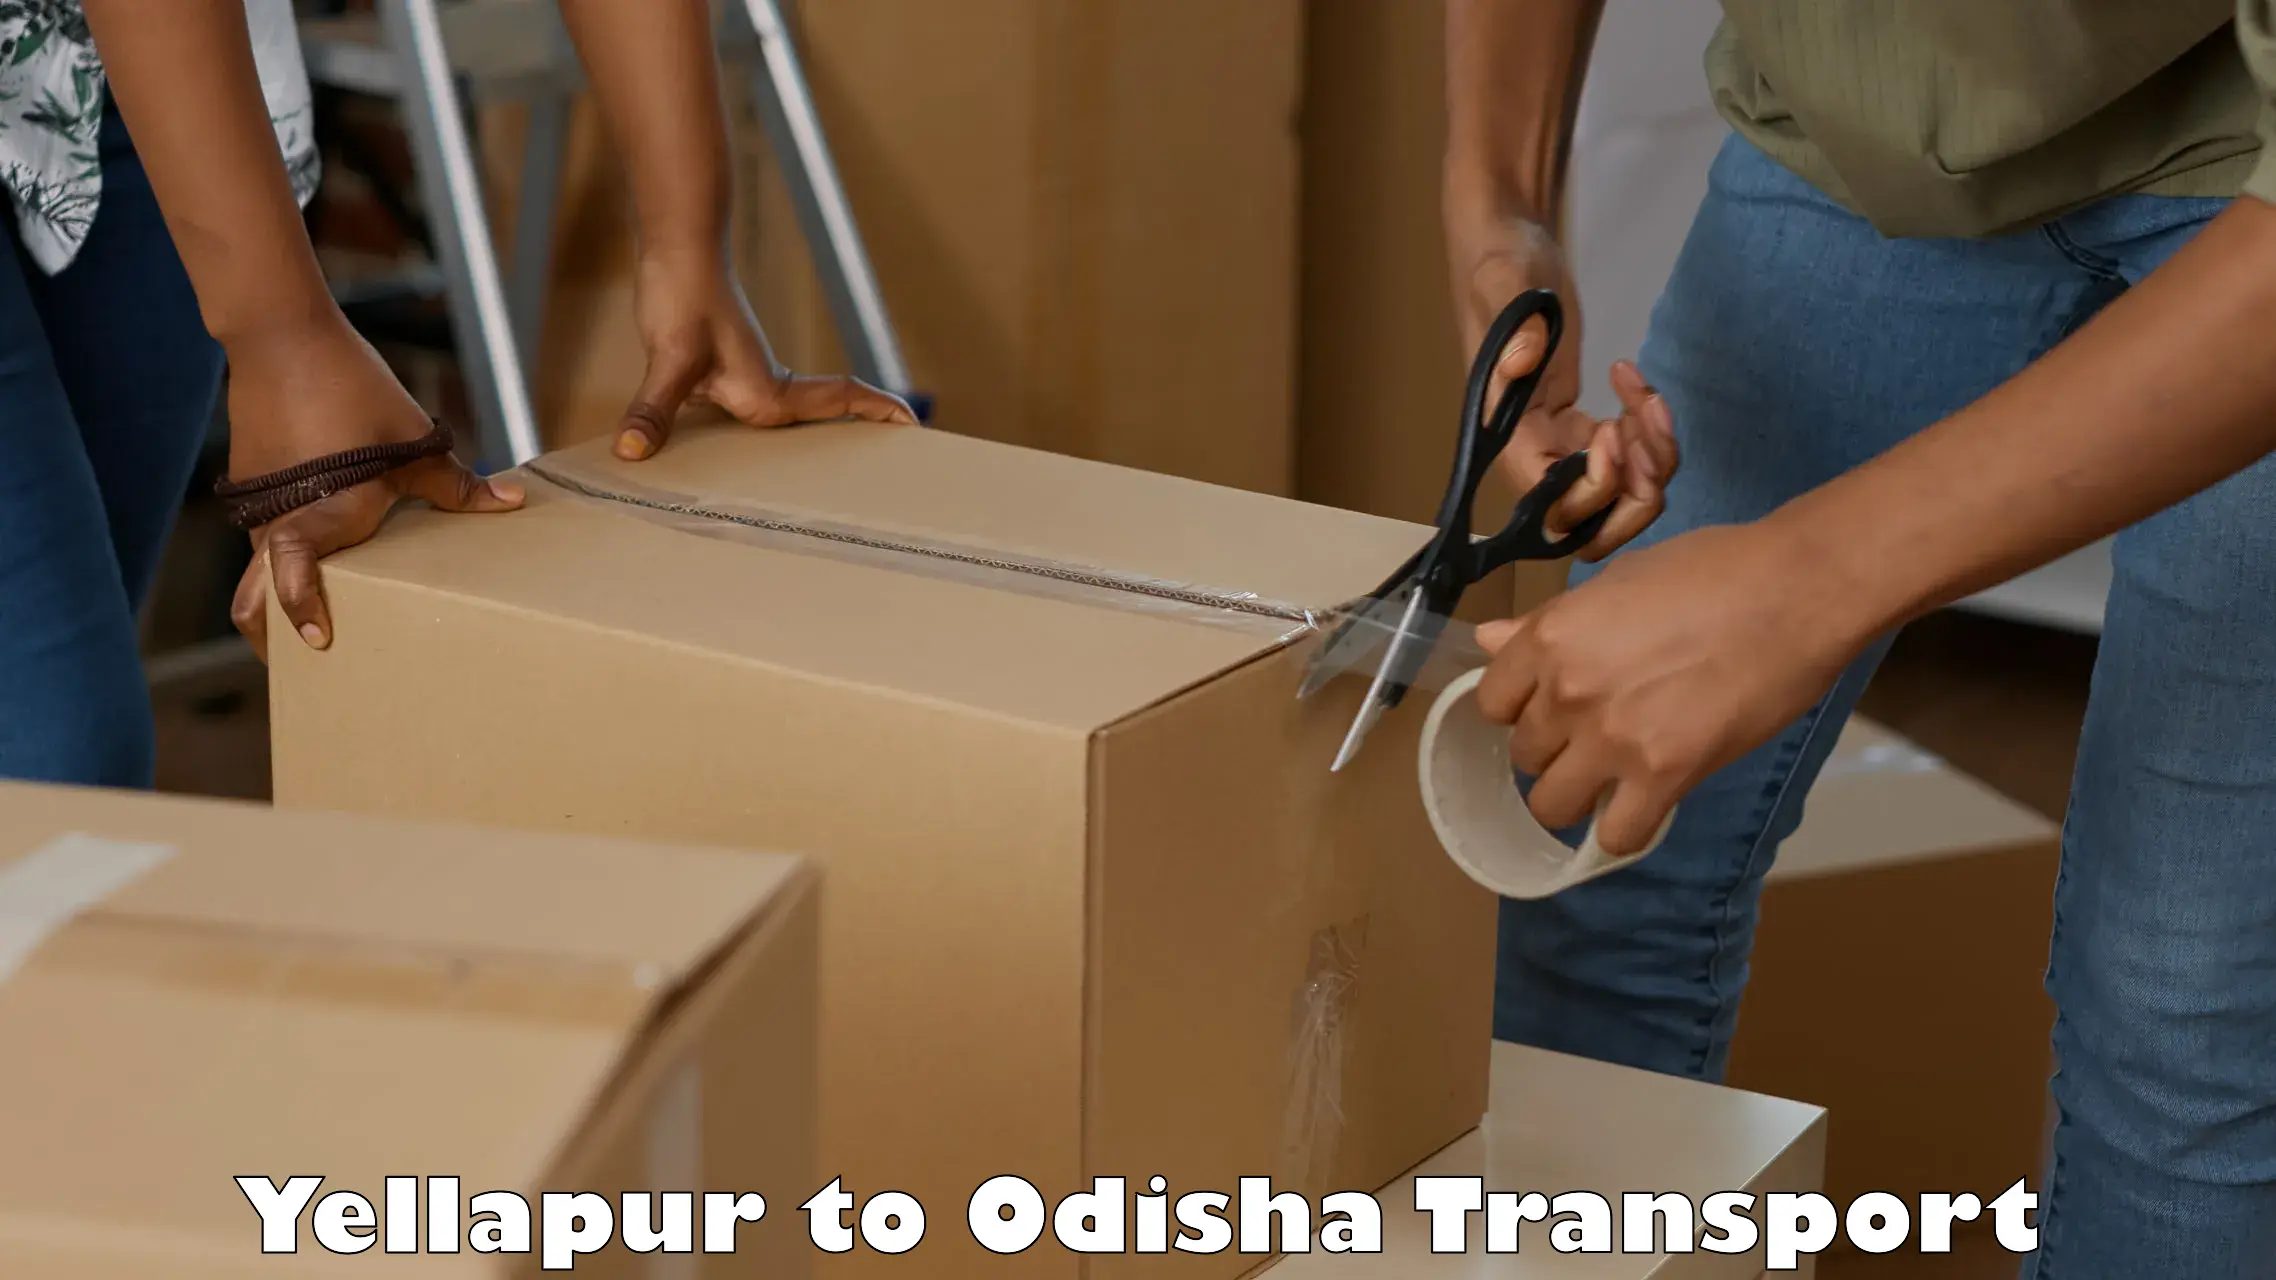 Container transport service Yellapur to Tikiri